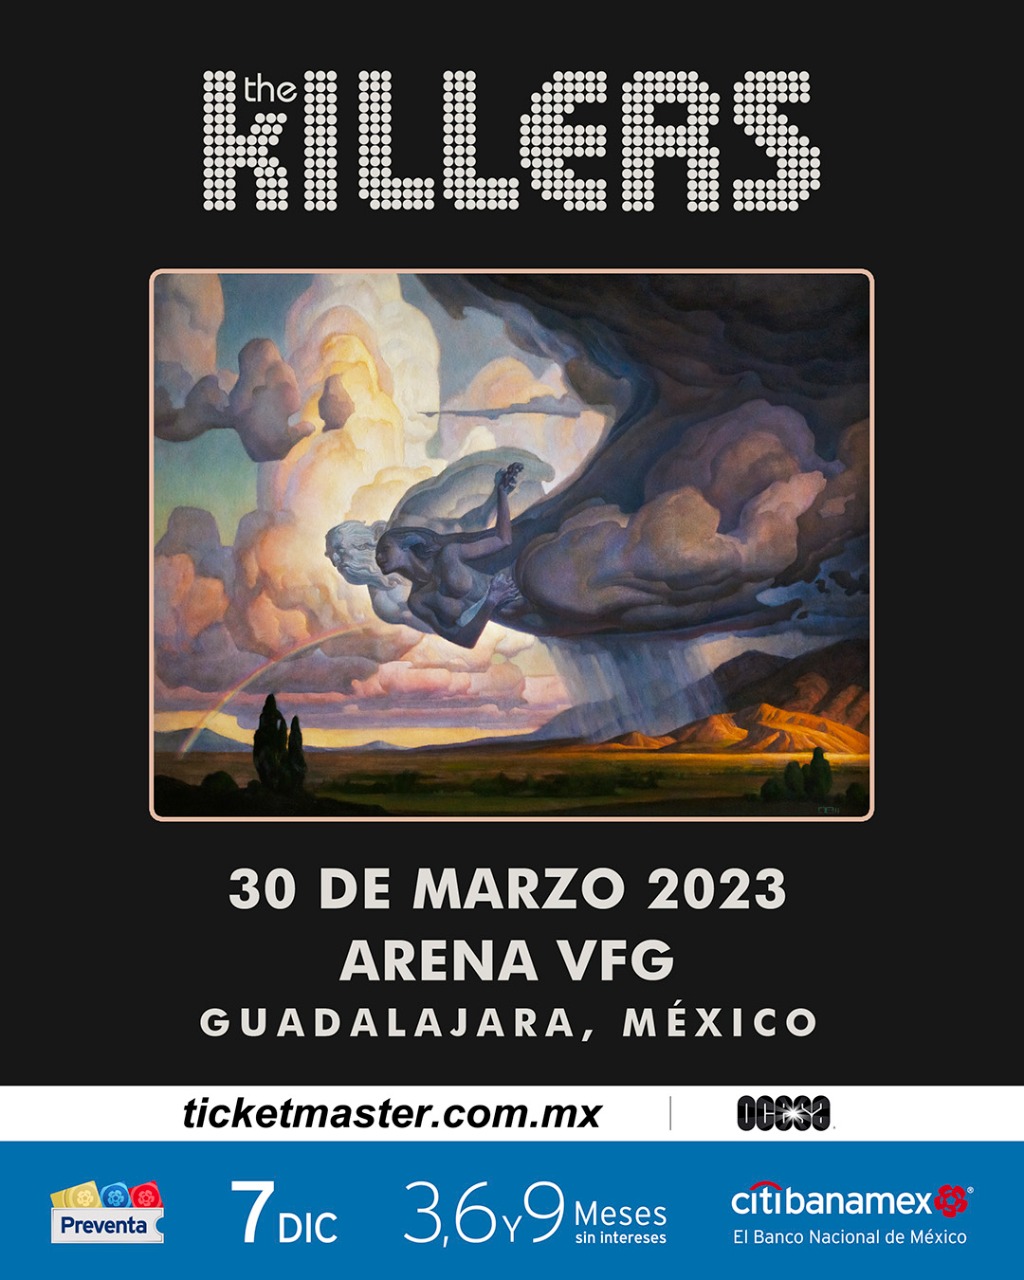 ¡The Killers regresa a México en 2023! 5